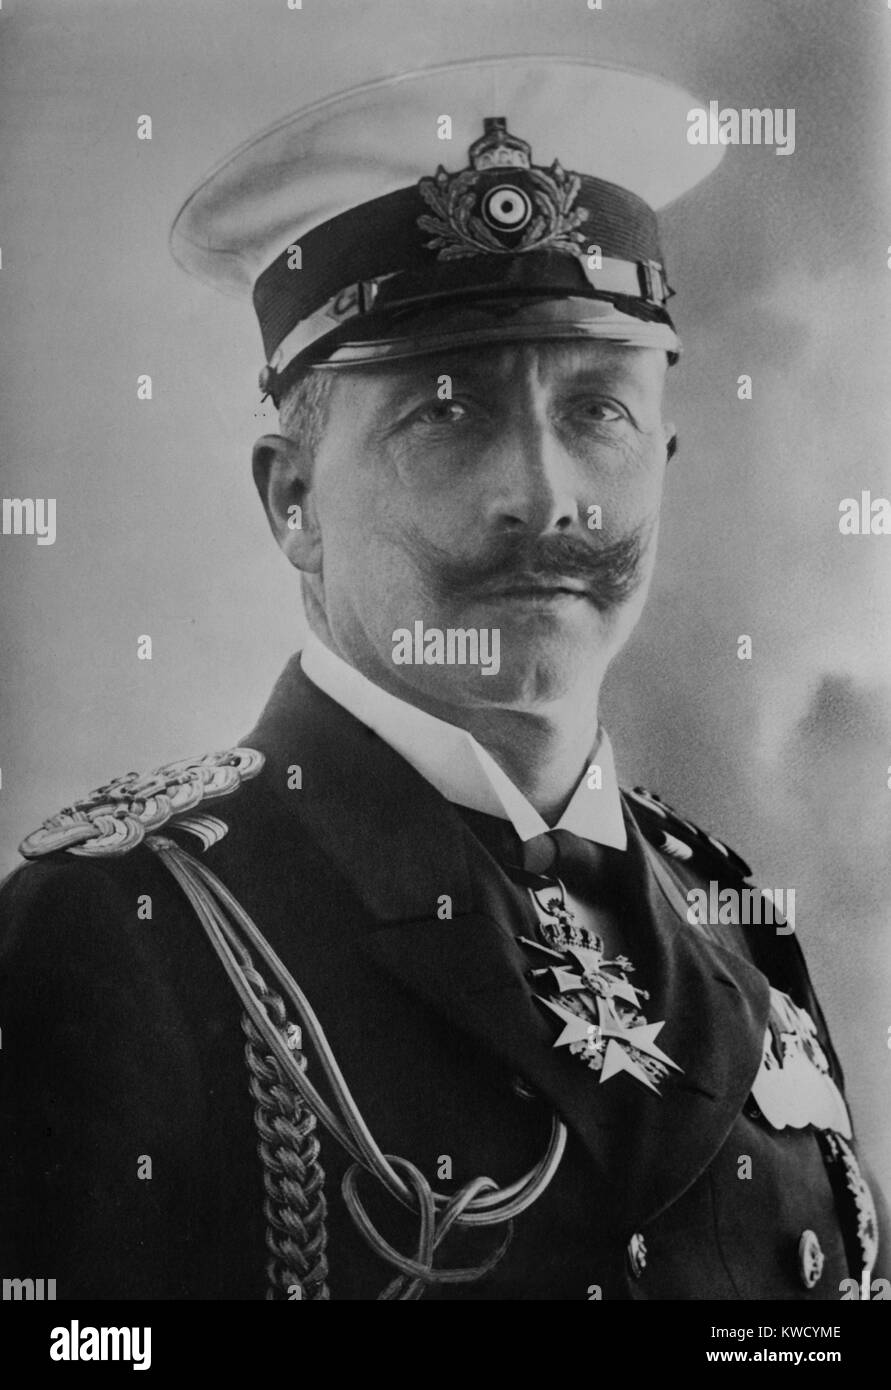 Kaiser Wilhelm II. von Deutschland, C. 1900. Seine Minister teil der deutschen Innenpolitik aber dominierte er Internationale Beziehungen mit Reibung, bellicosity, und die Expansion der Deutschen Marine (BSLOC 2017 2 41) Stockfoto